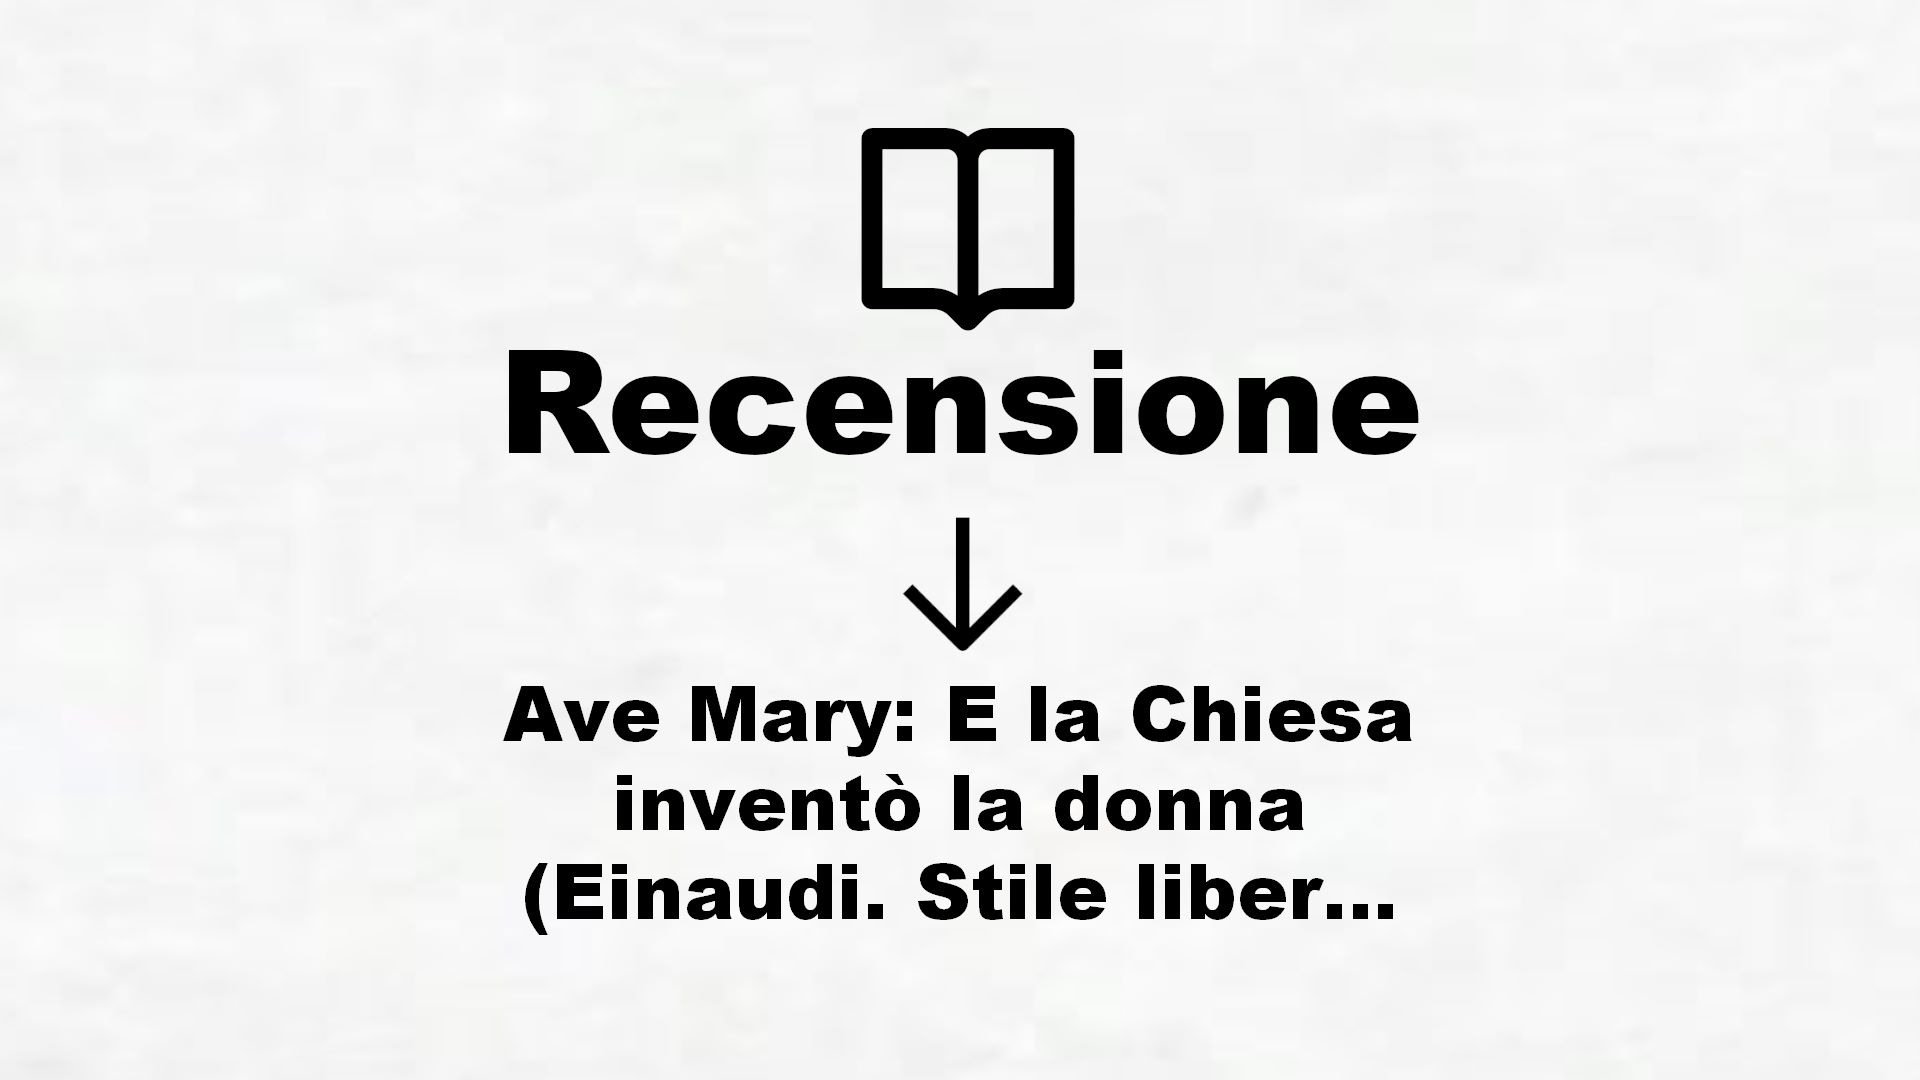 Ave Mary: E la Chiesa inventò la donna (Einaudi. Stile libero big) – Recensione Libro